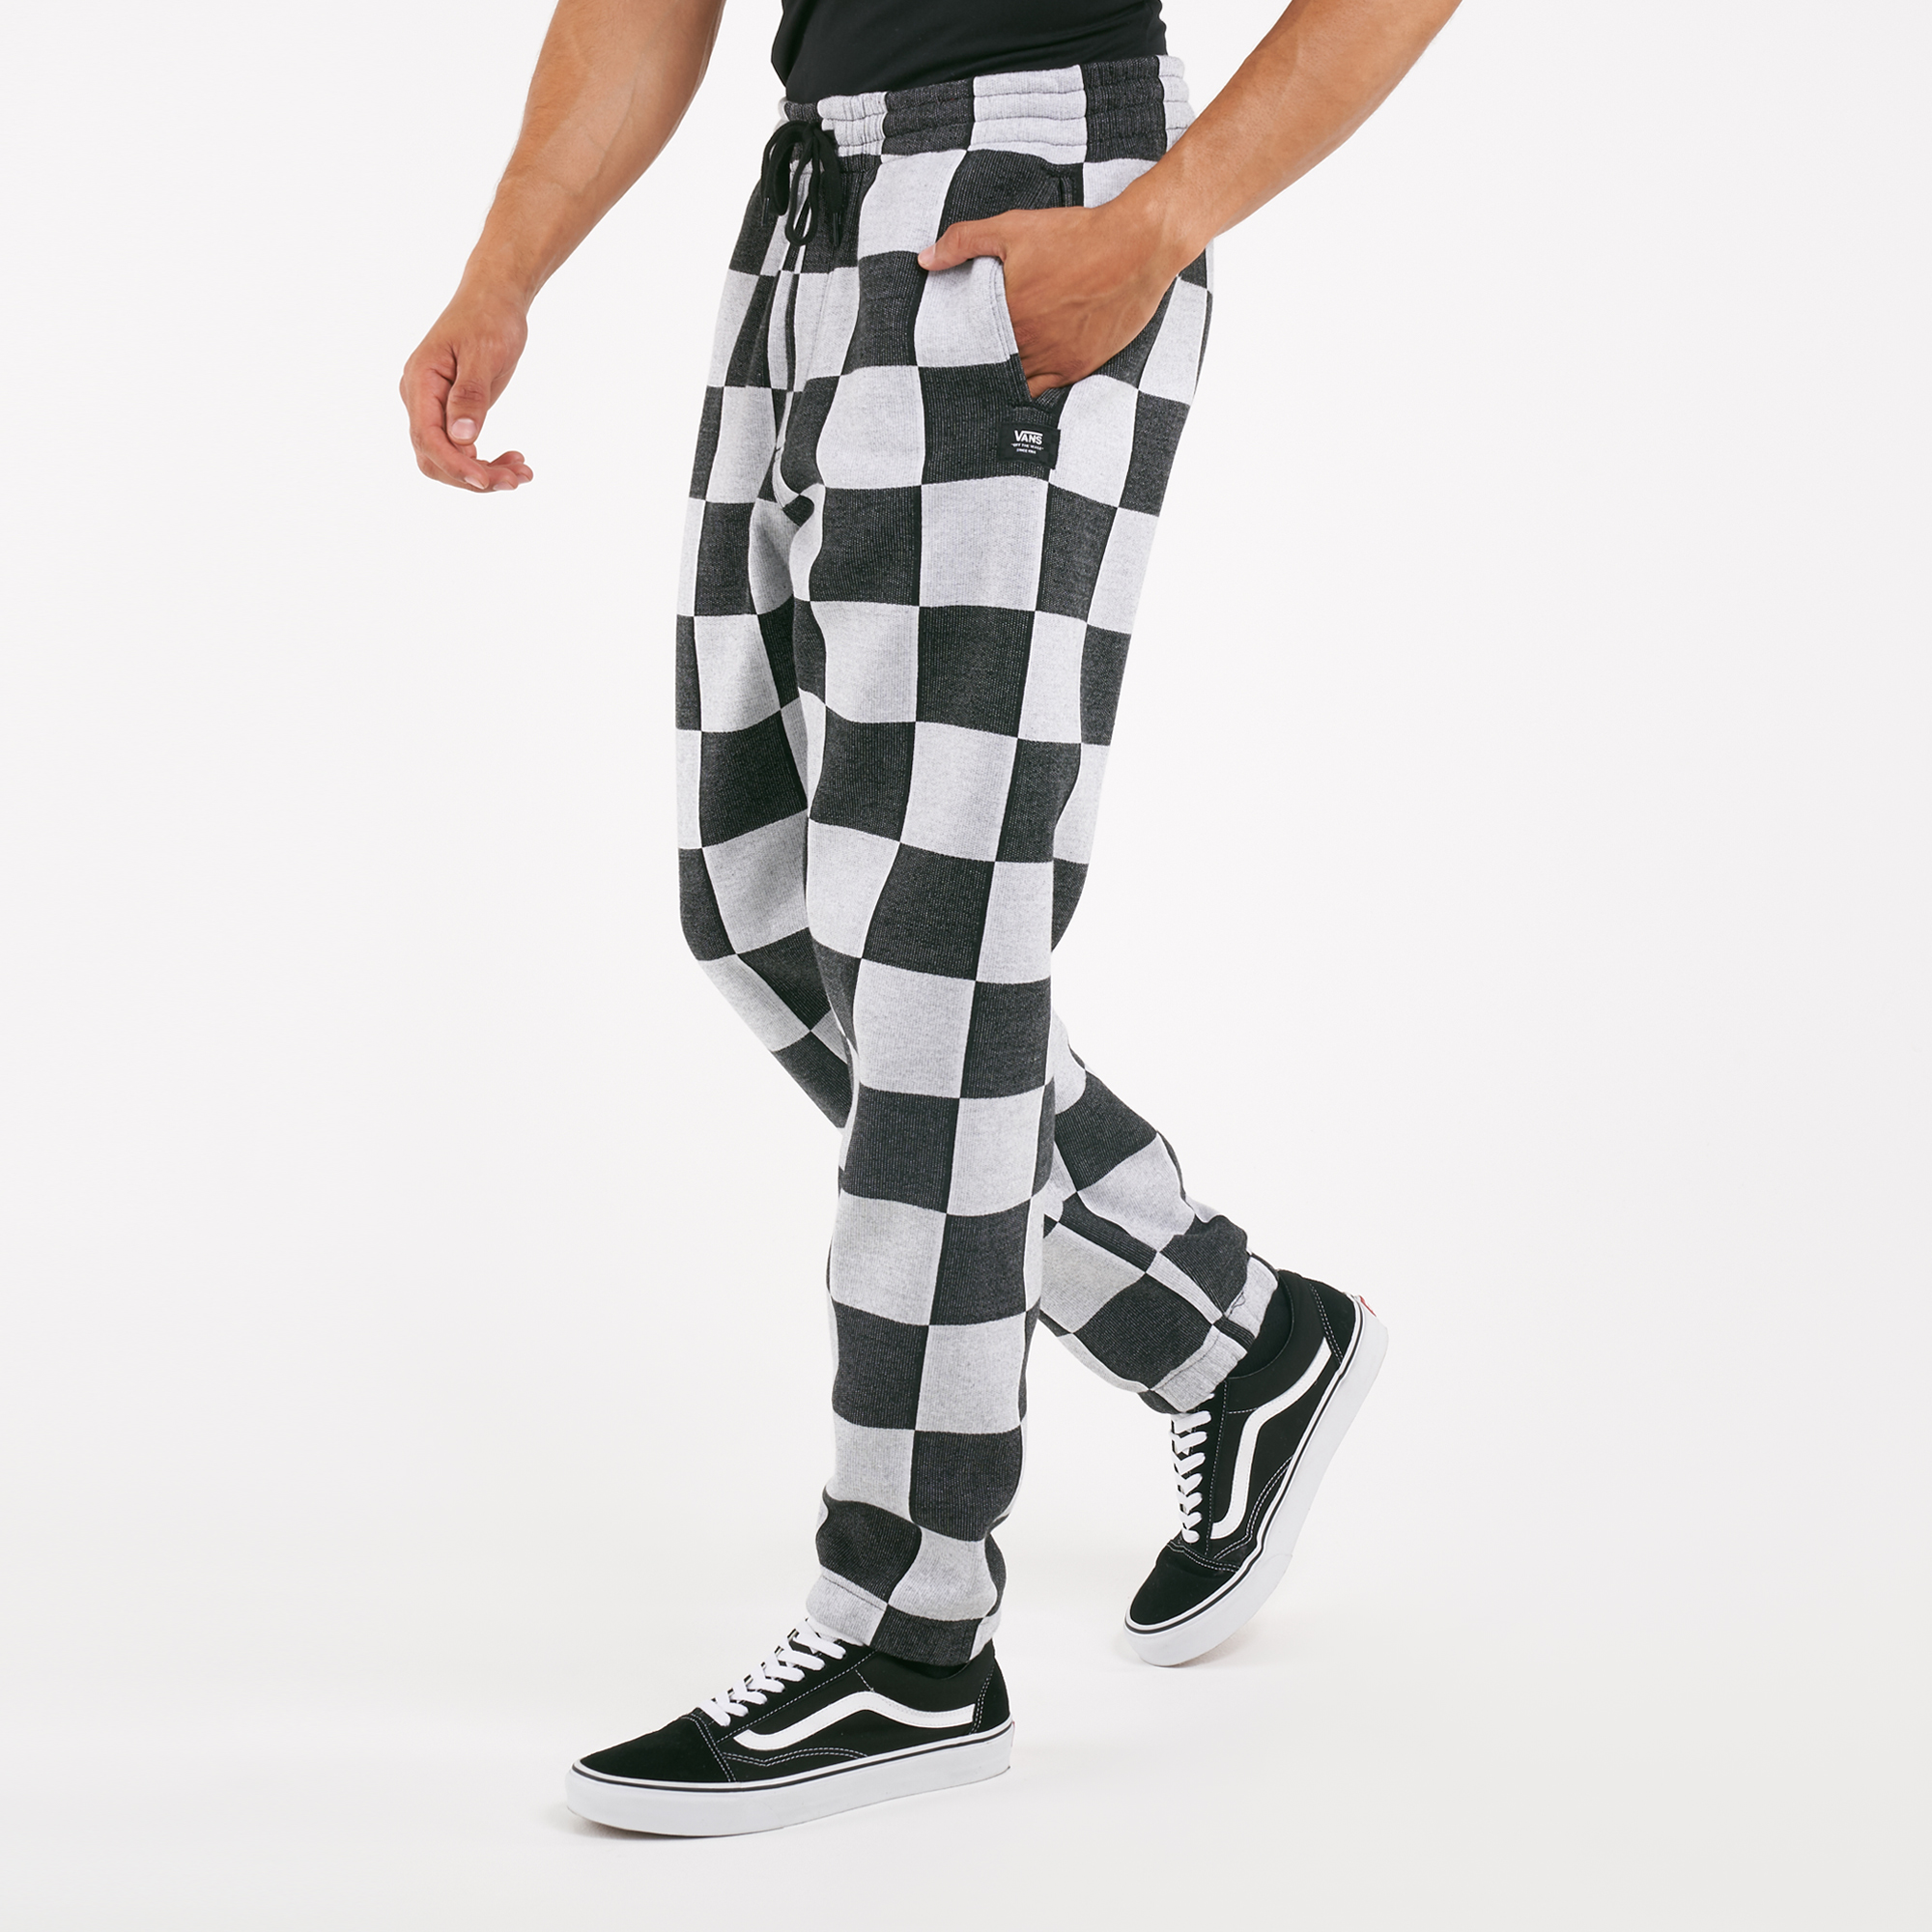 vans checkerboard shorts mens